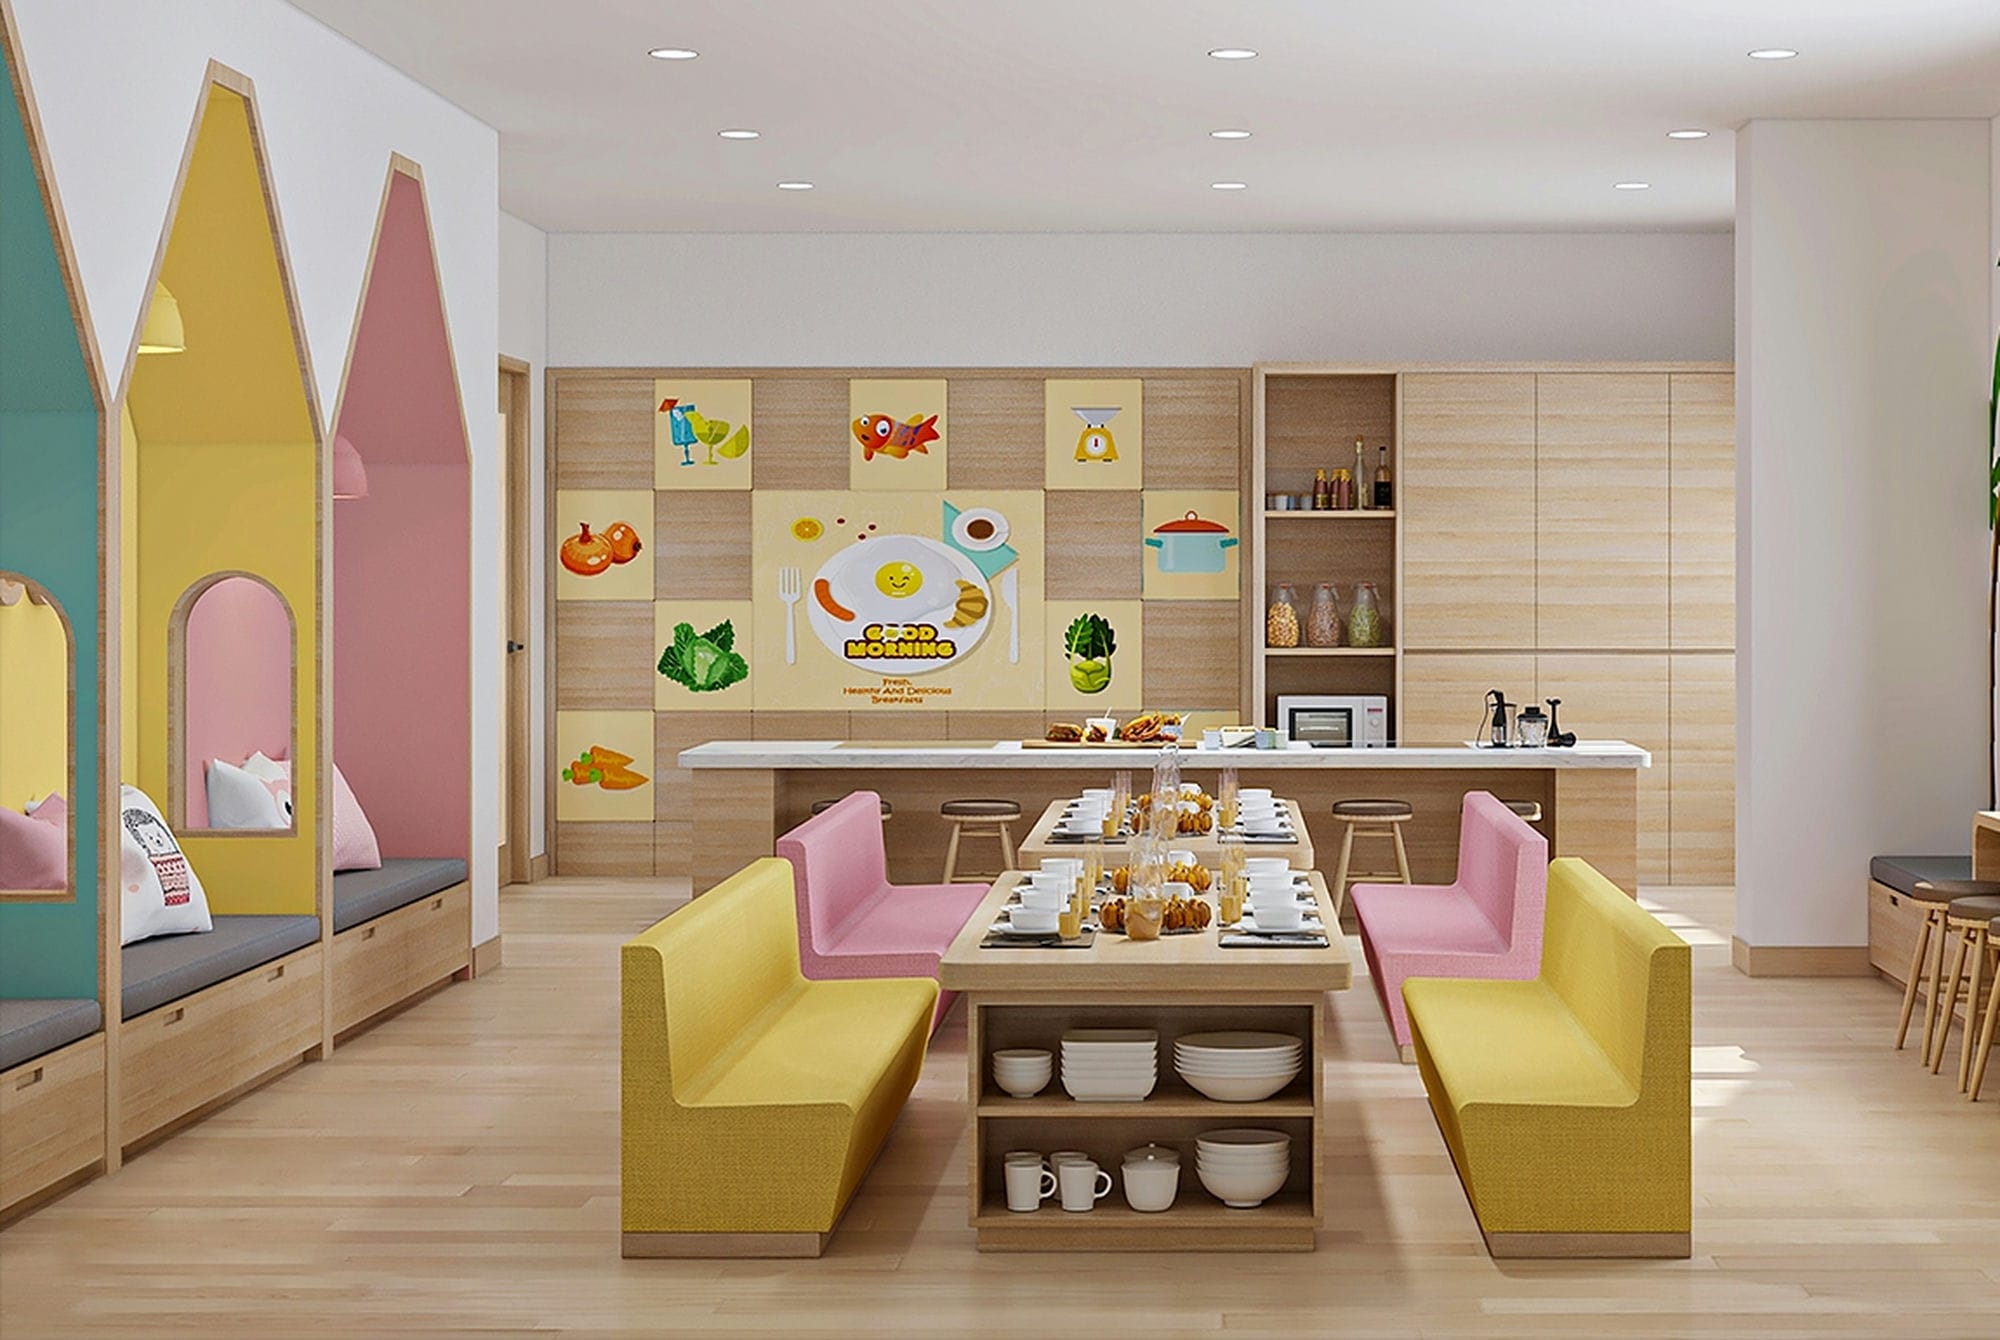 Canteen 3D Design of Happy House Preschool | NTDecor